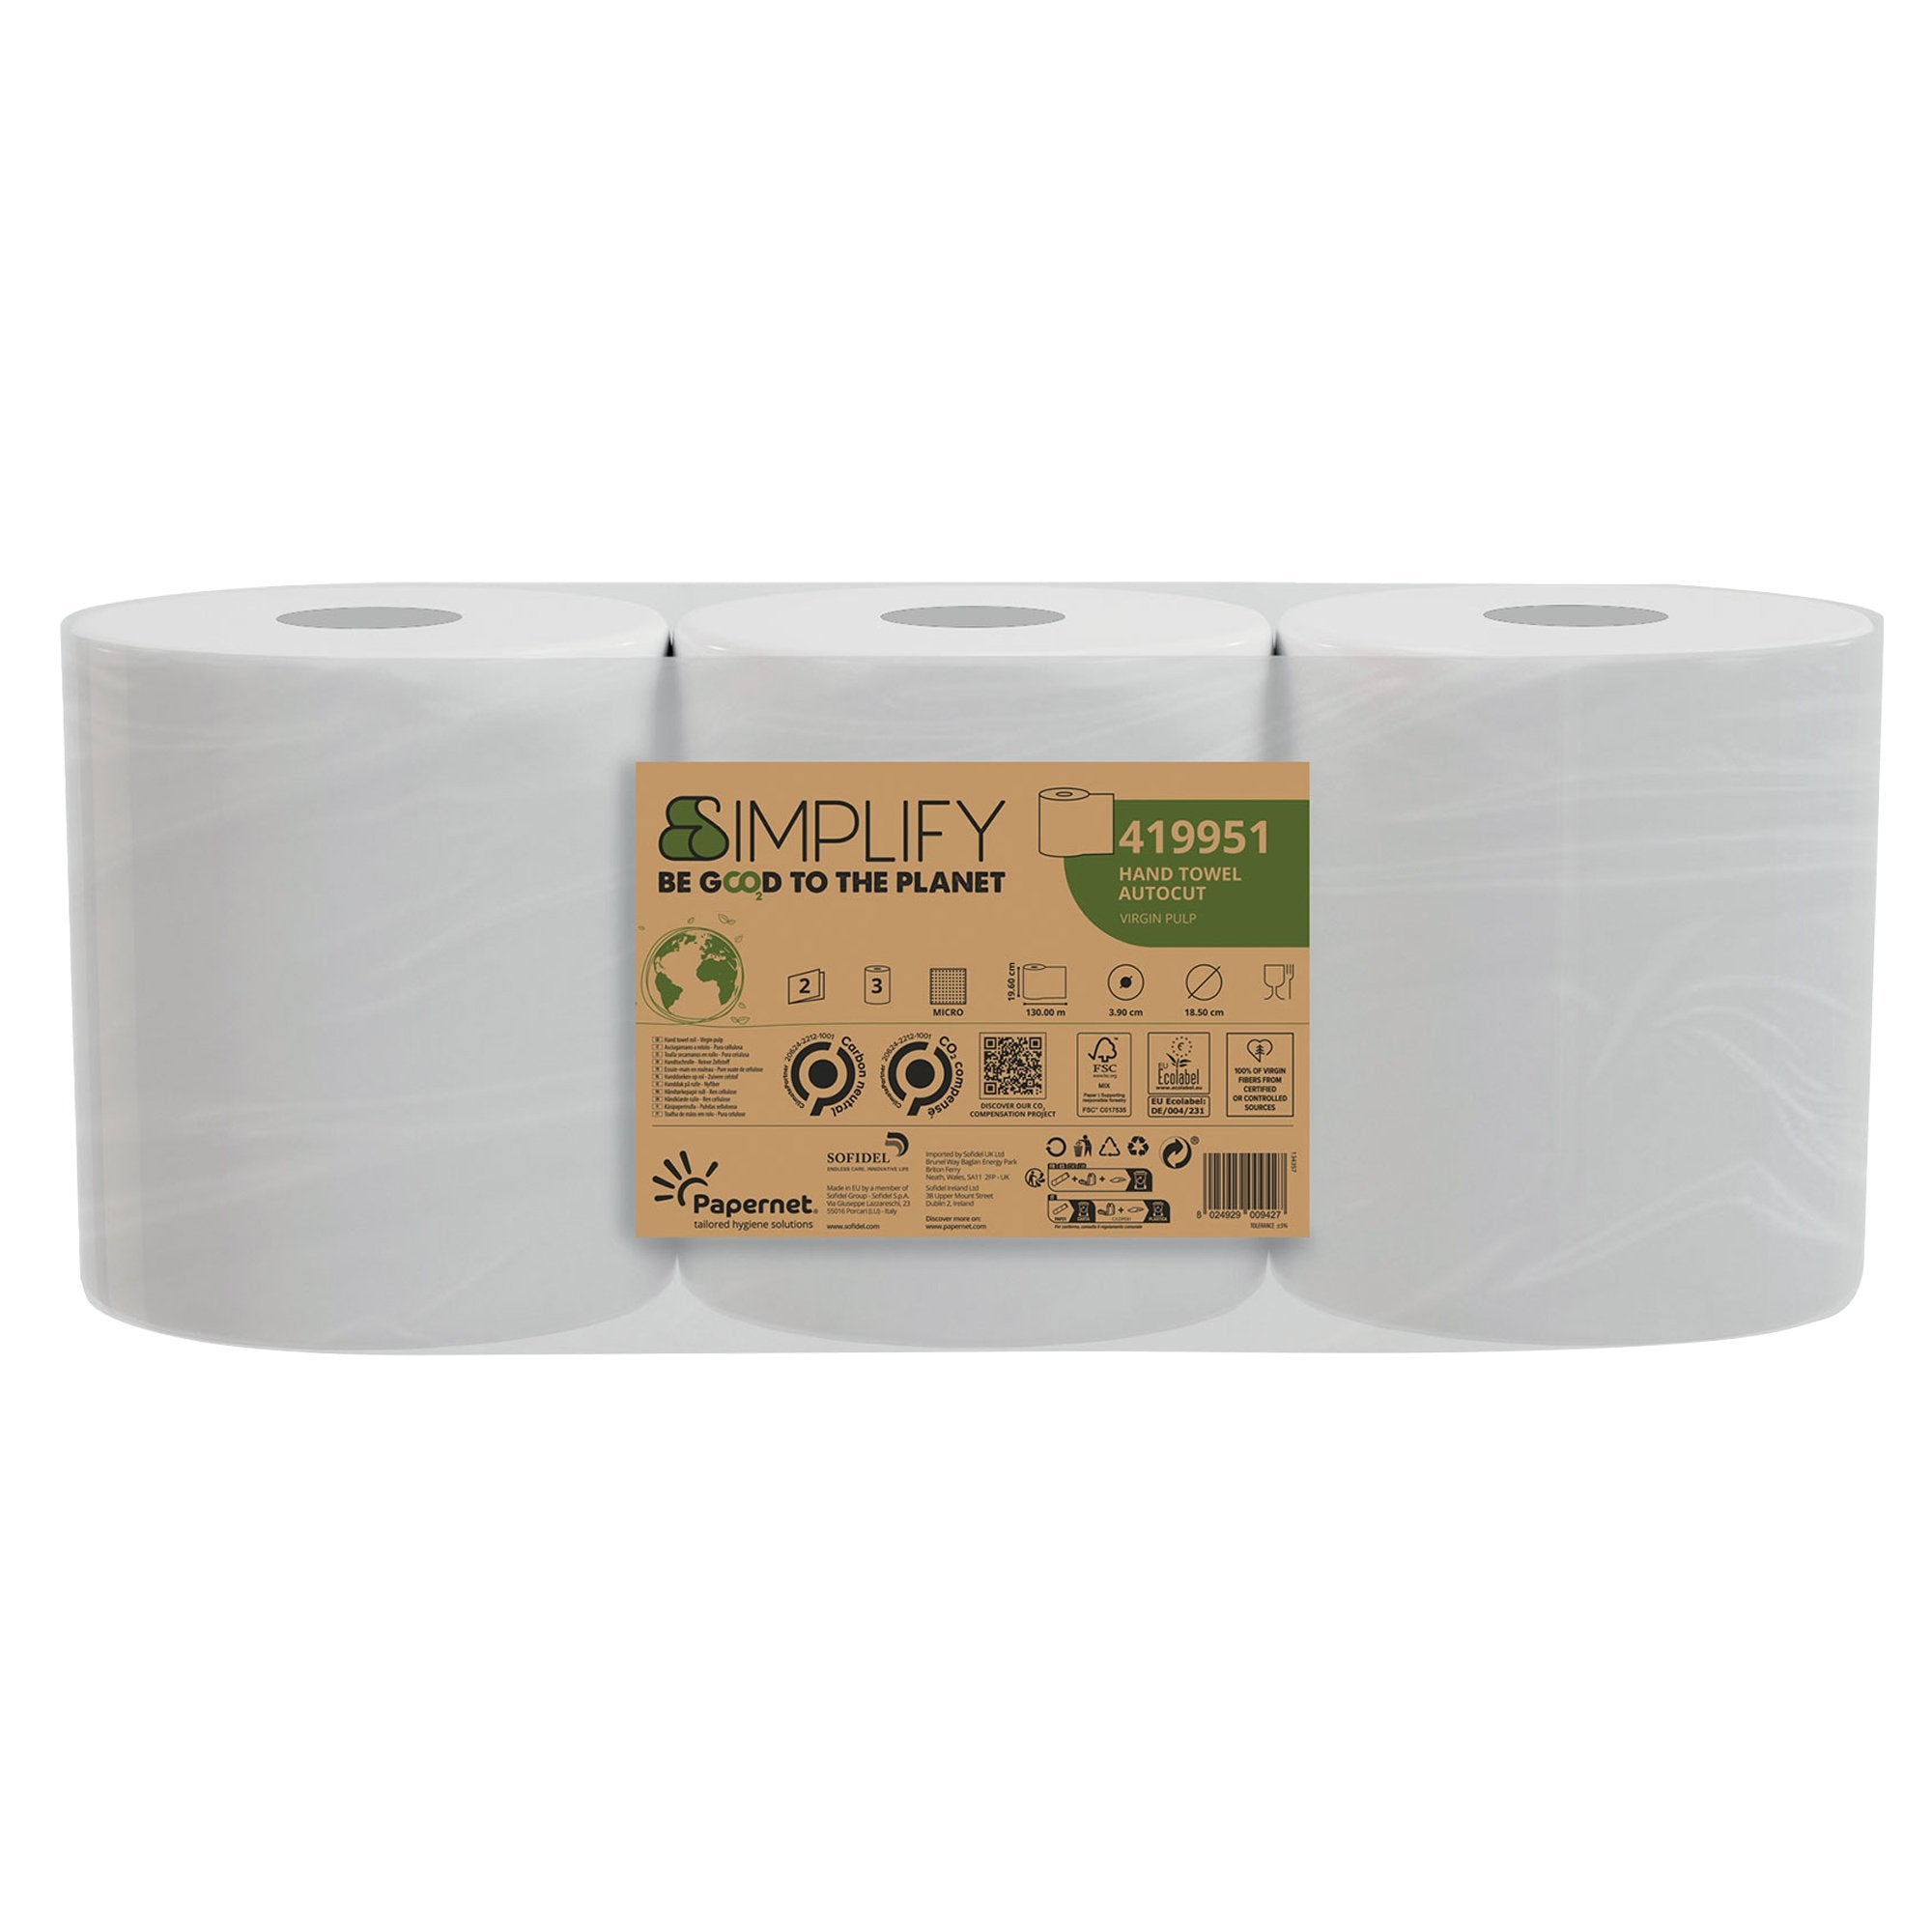 papernet-asciugamano-rotolo-autocut-l130m-x-d18-5cm-simplify